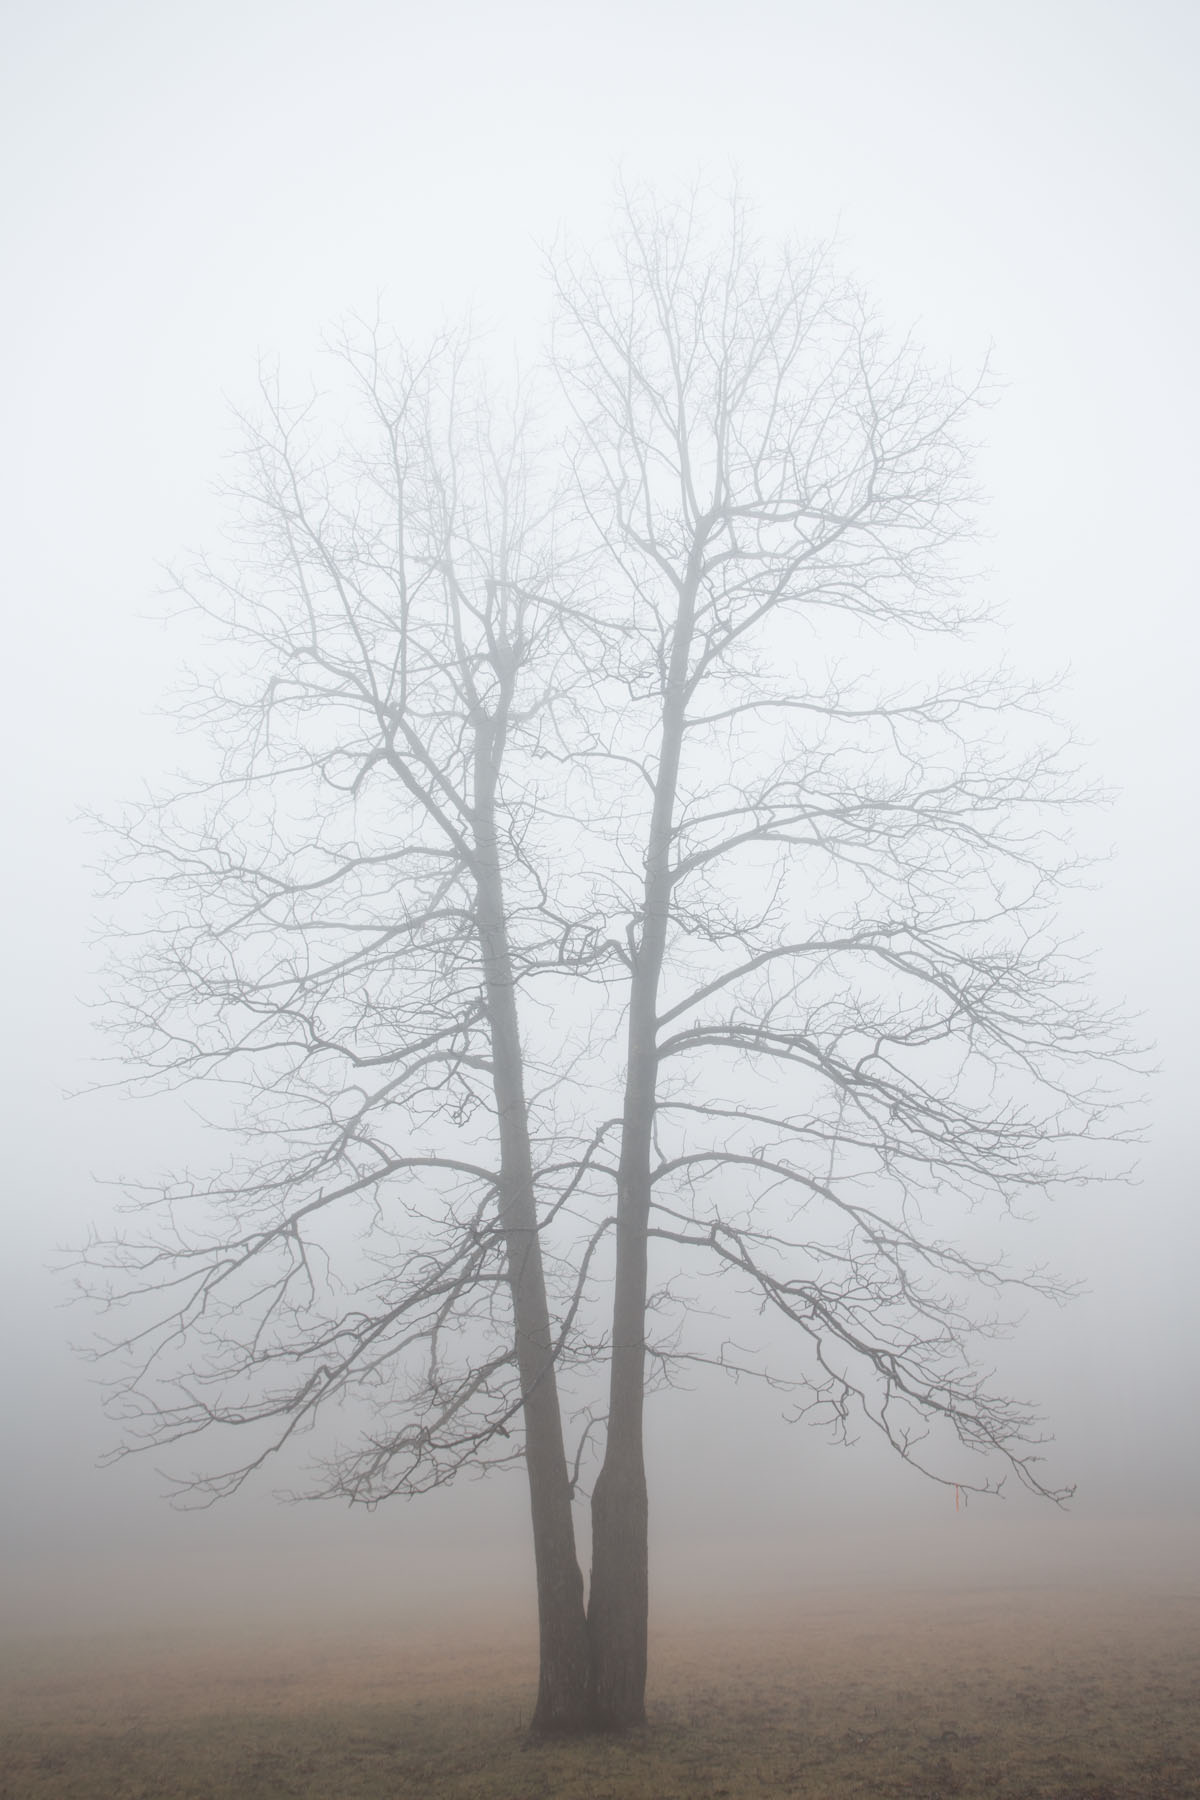 RA_tate in fog-201602206666.jpg